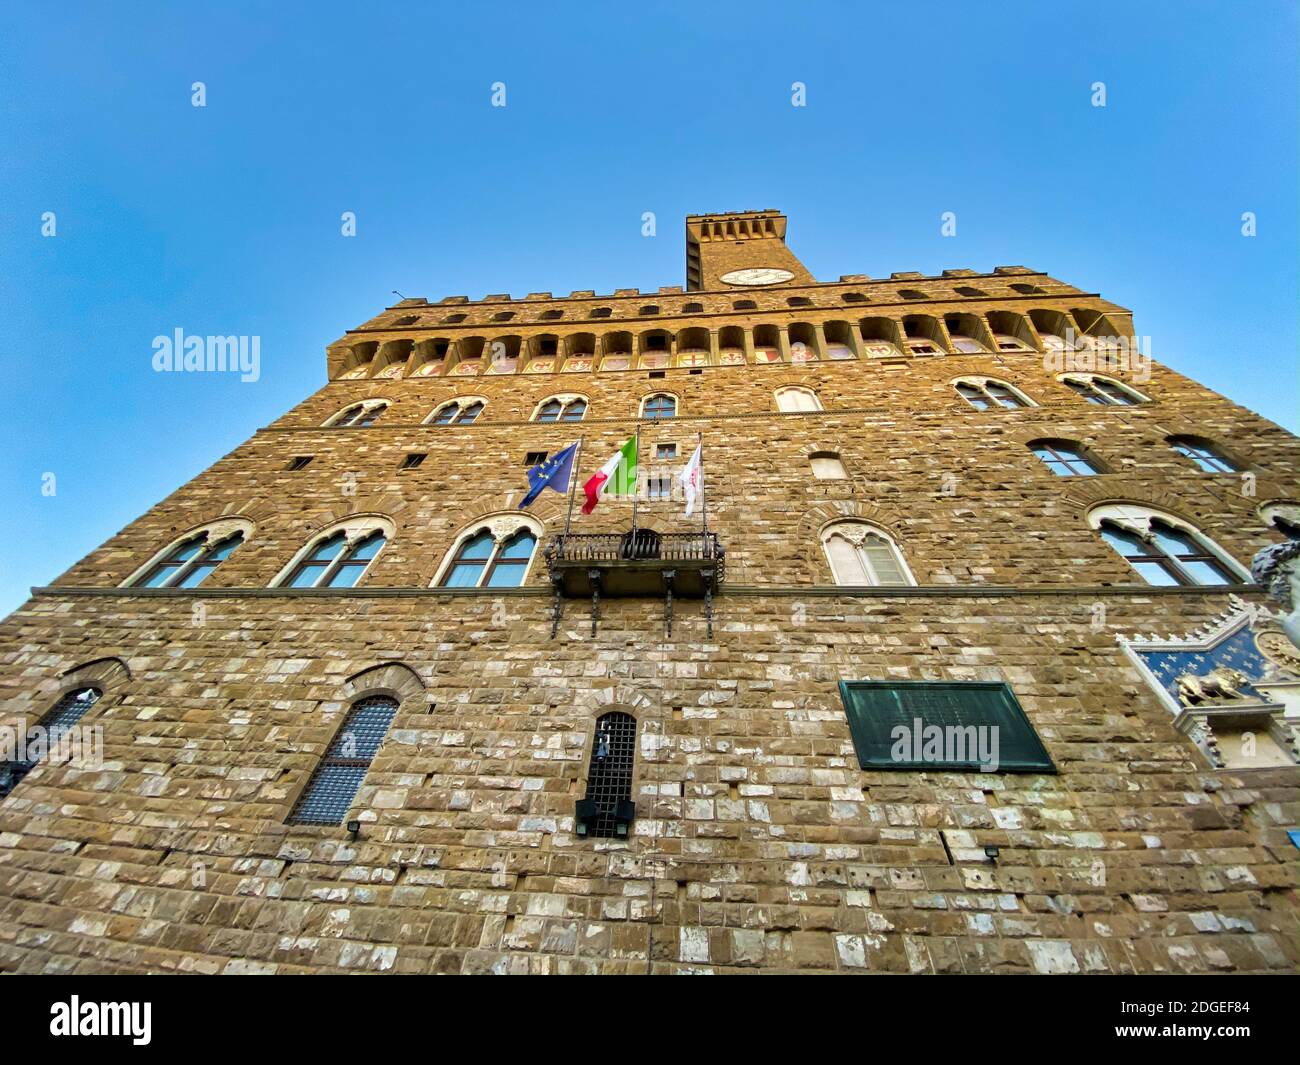 Palazzo Vecchio in Piazza Signoria, Florence Stock Photo